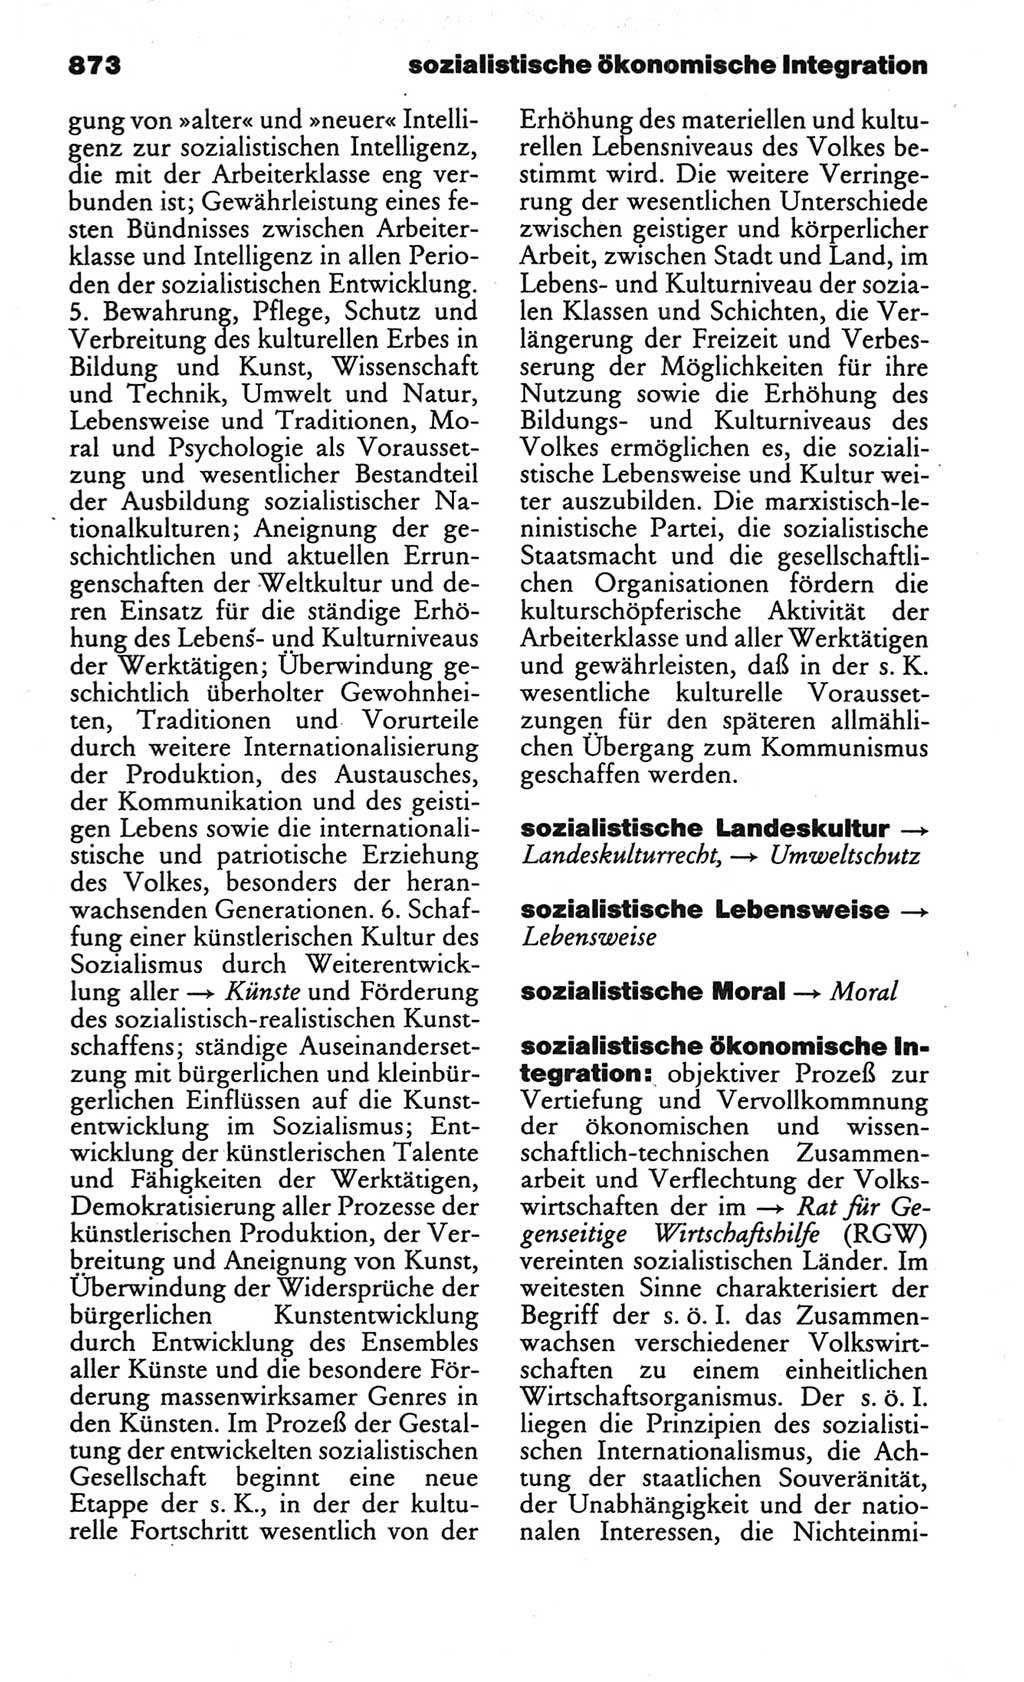 Kleines politisches Wörterbuch [Deutsche Demokratische Republik (DDR)] 1986, Seite 873 (Kl. pol. Wb. DDR 1986, S. 873)